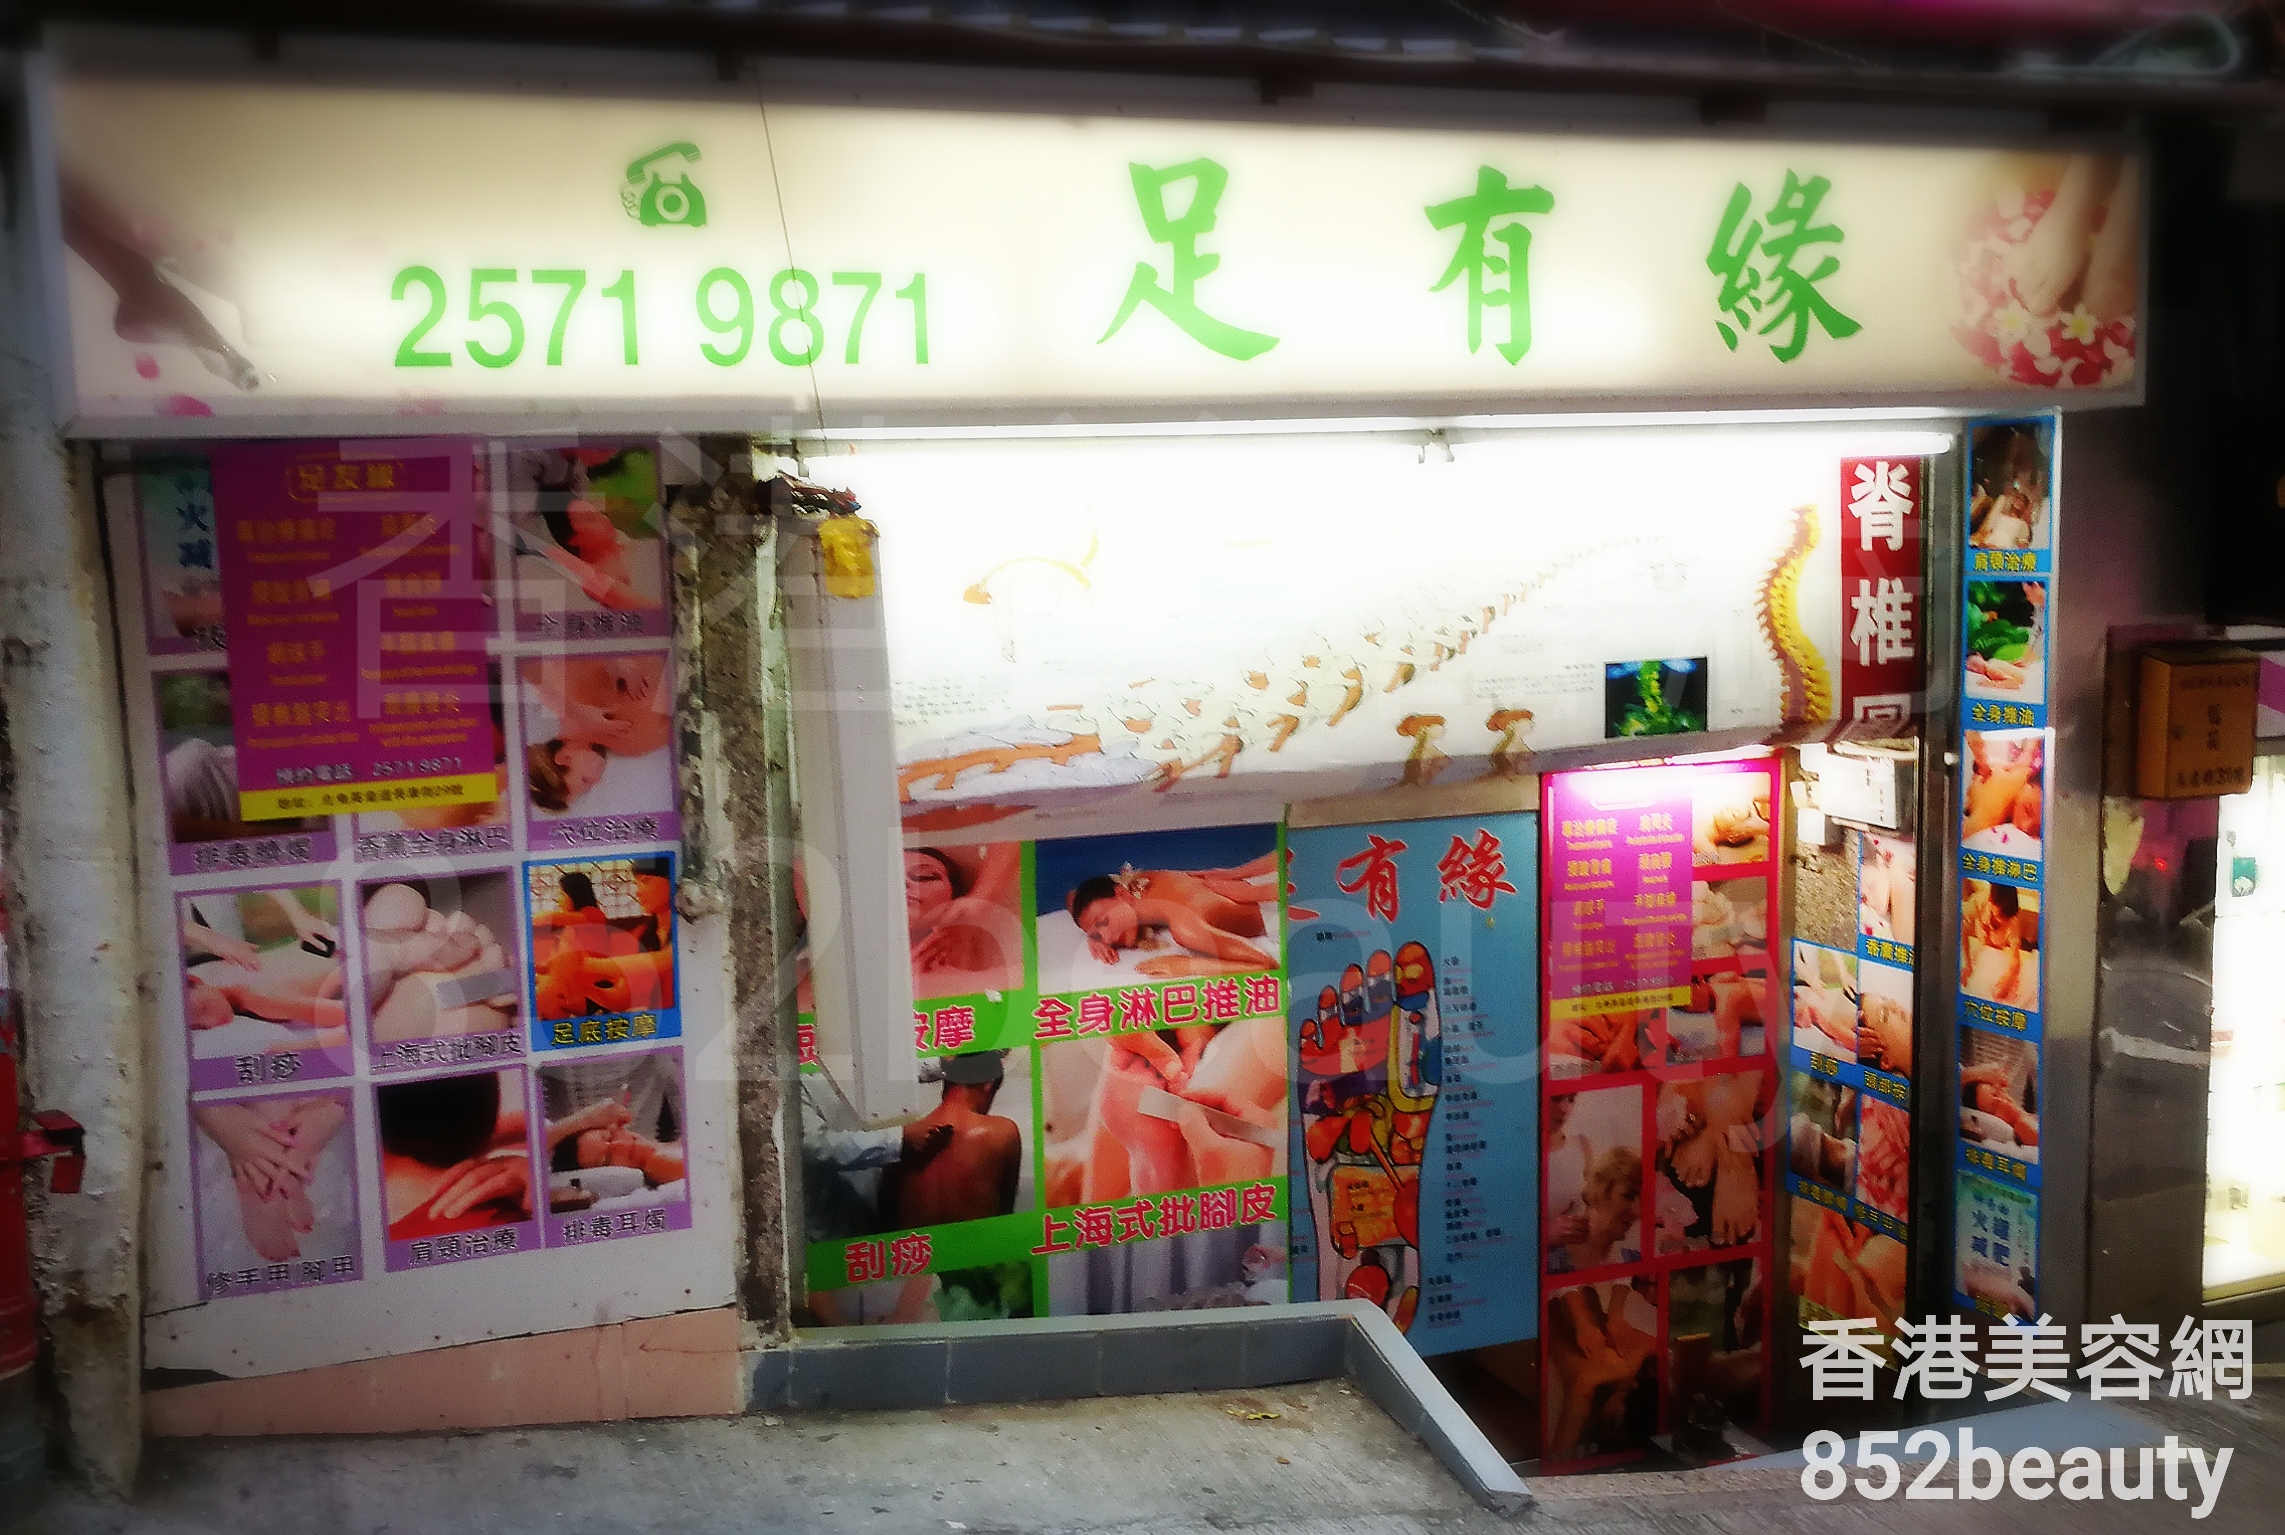 香港美容網 Hong Kong Beauty Salon 美容院 / 美容師: 足有緣